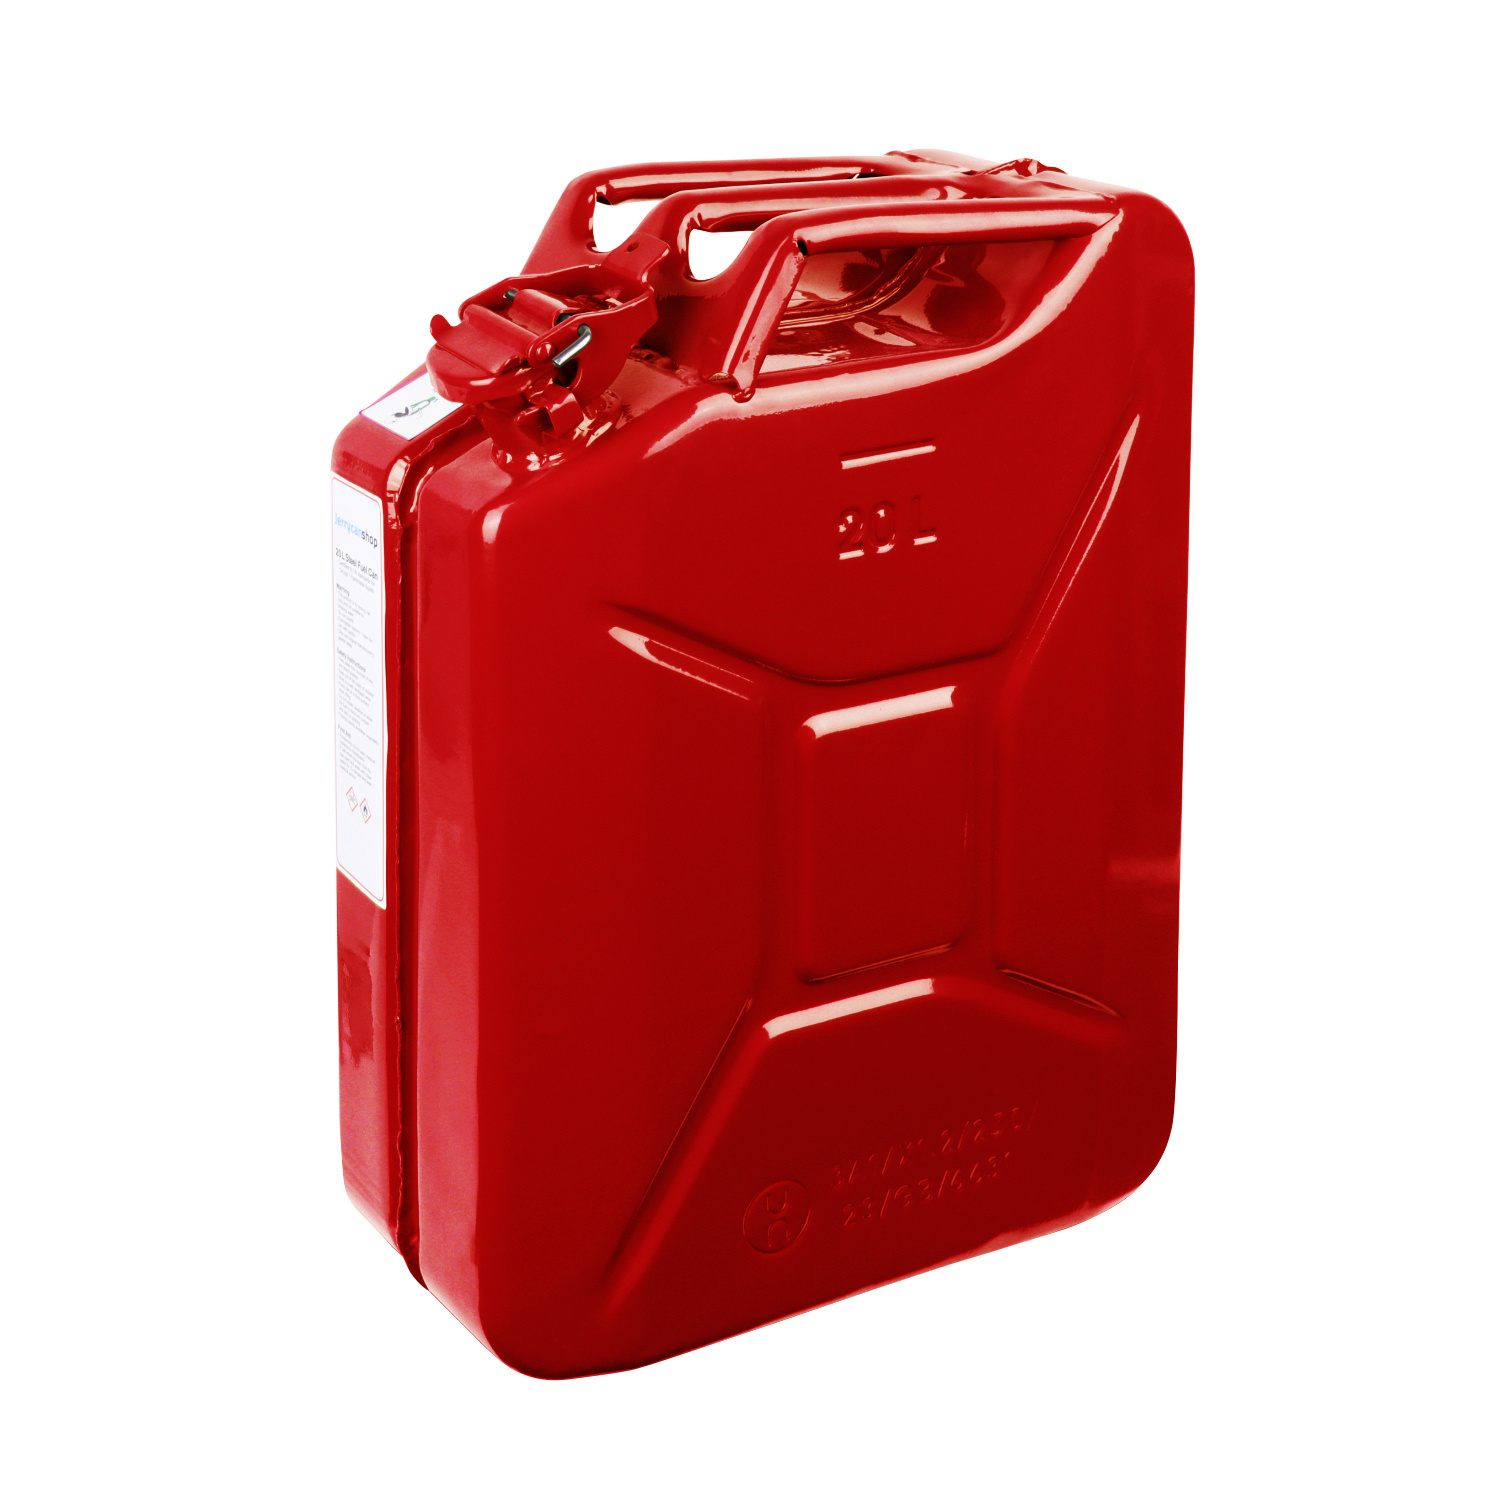 20 Liter Metall Kanister für Benzin & Diesel - Rot 